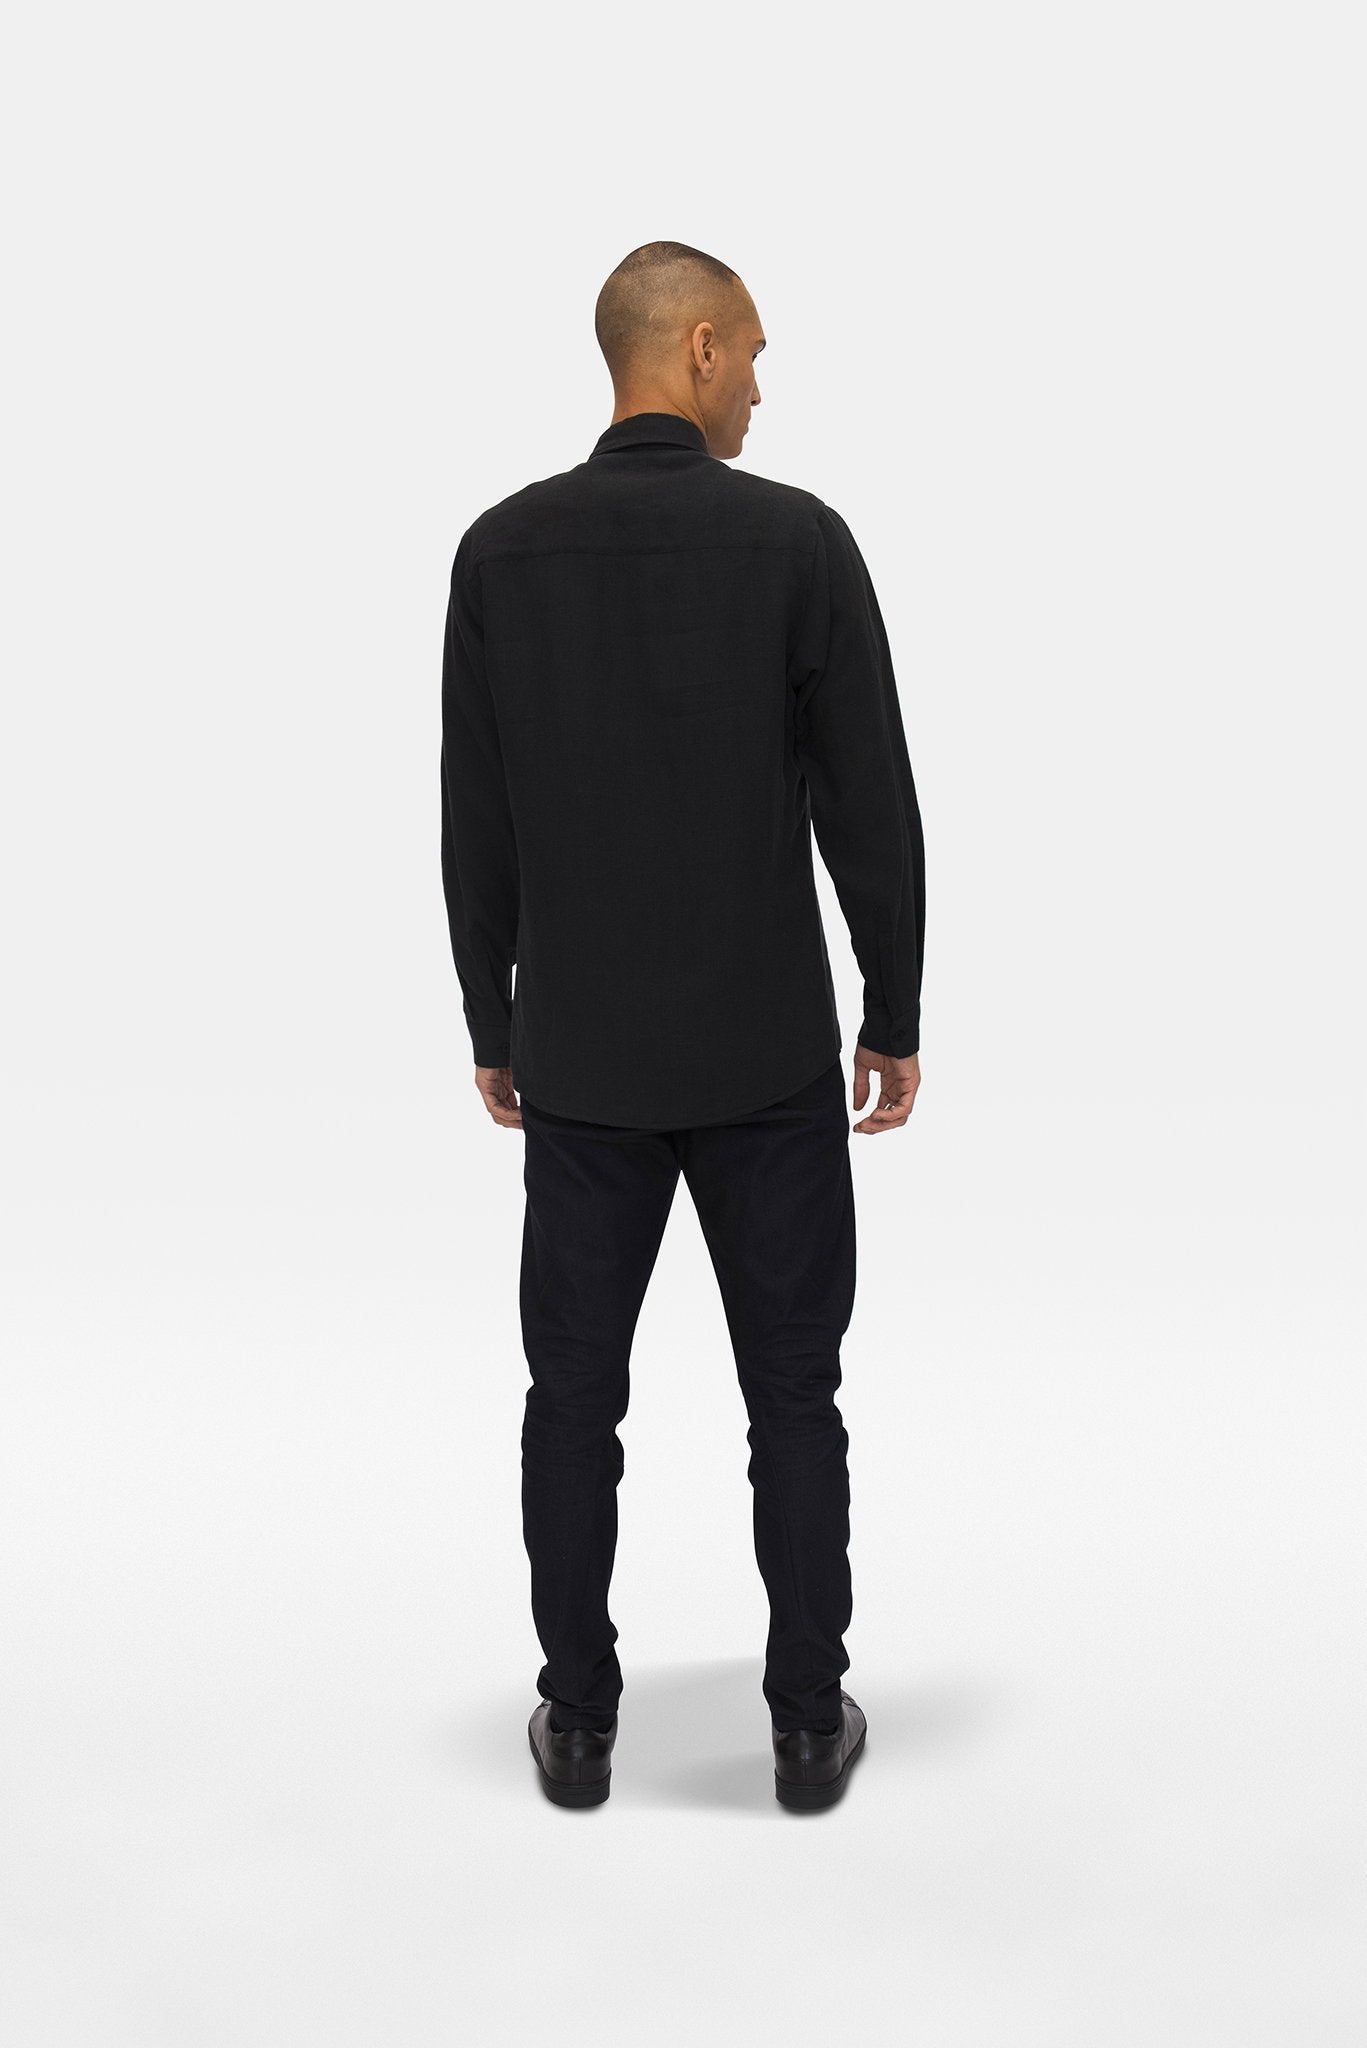 A.BCH A.04 Black Long Sleeve Button Up Shirt in Organic Linen